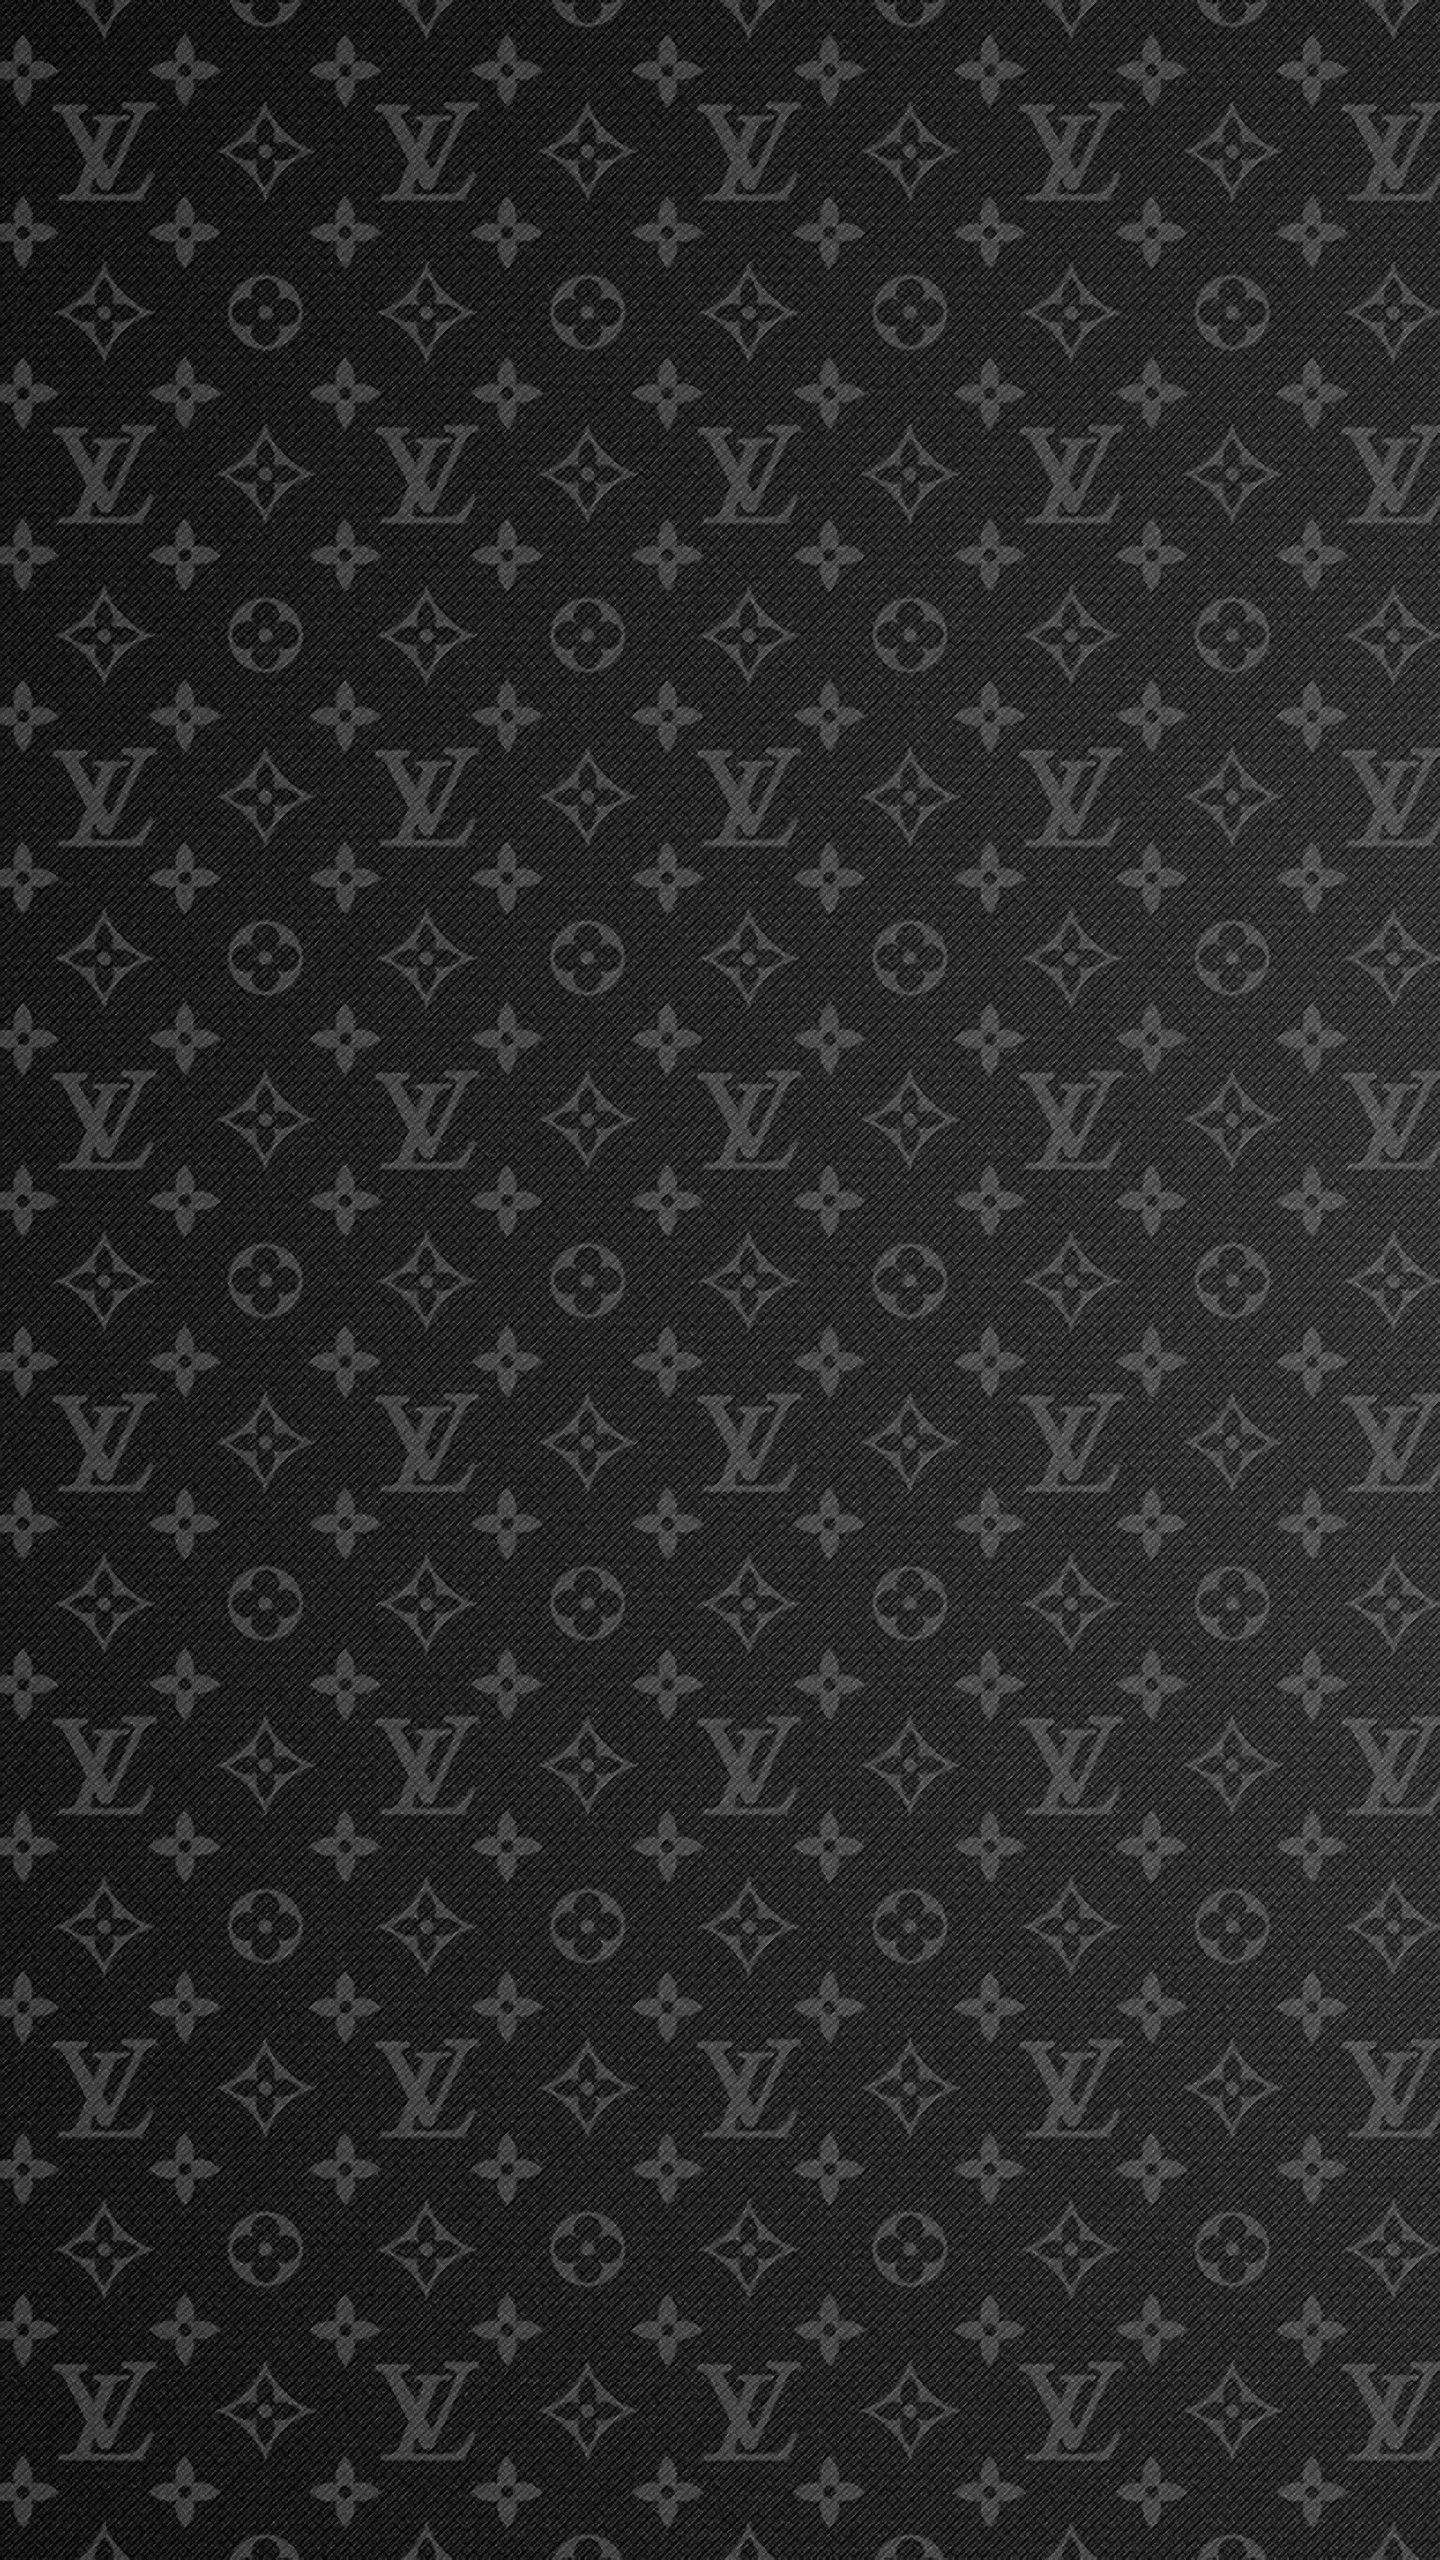 Free download 750x750px supreme louis vuitton wallpaper [750x750] for your  Desktop, Mobile & Tablet, Explore 24+ Supreme Louis Vuitton Wallpapers